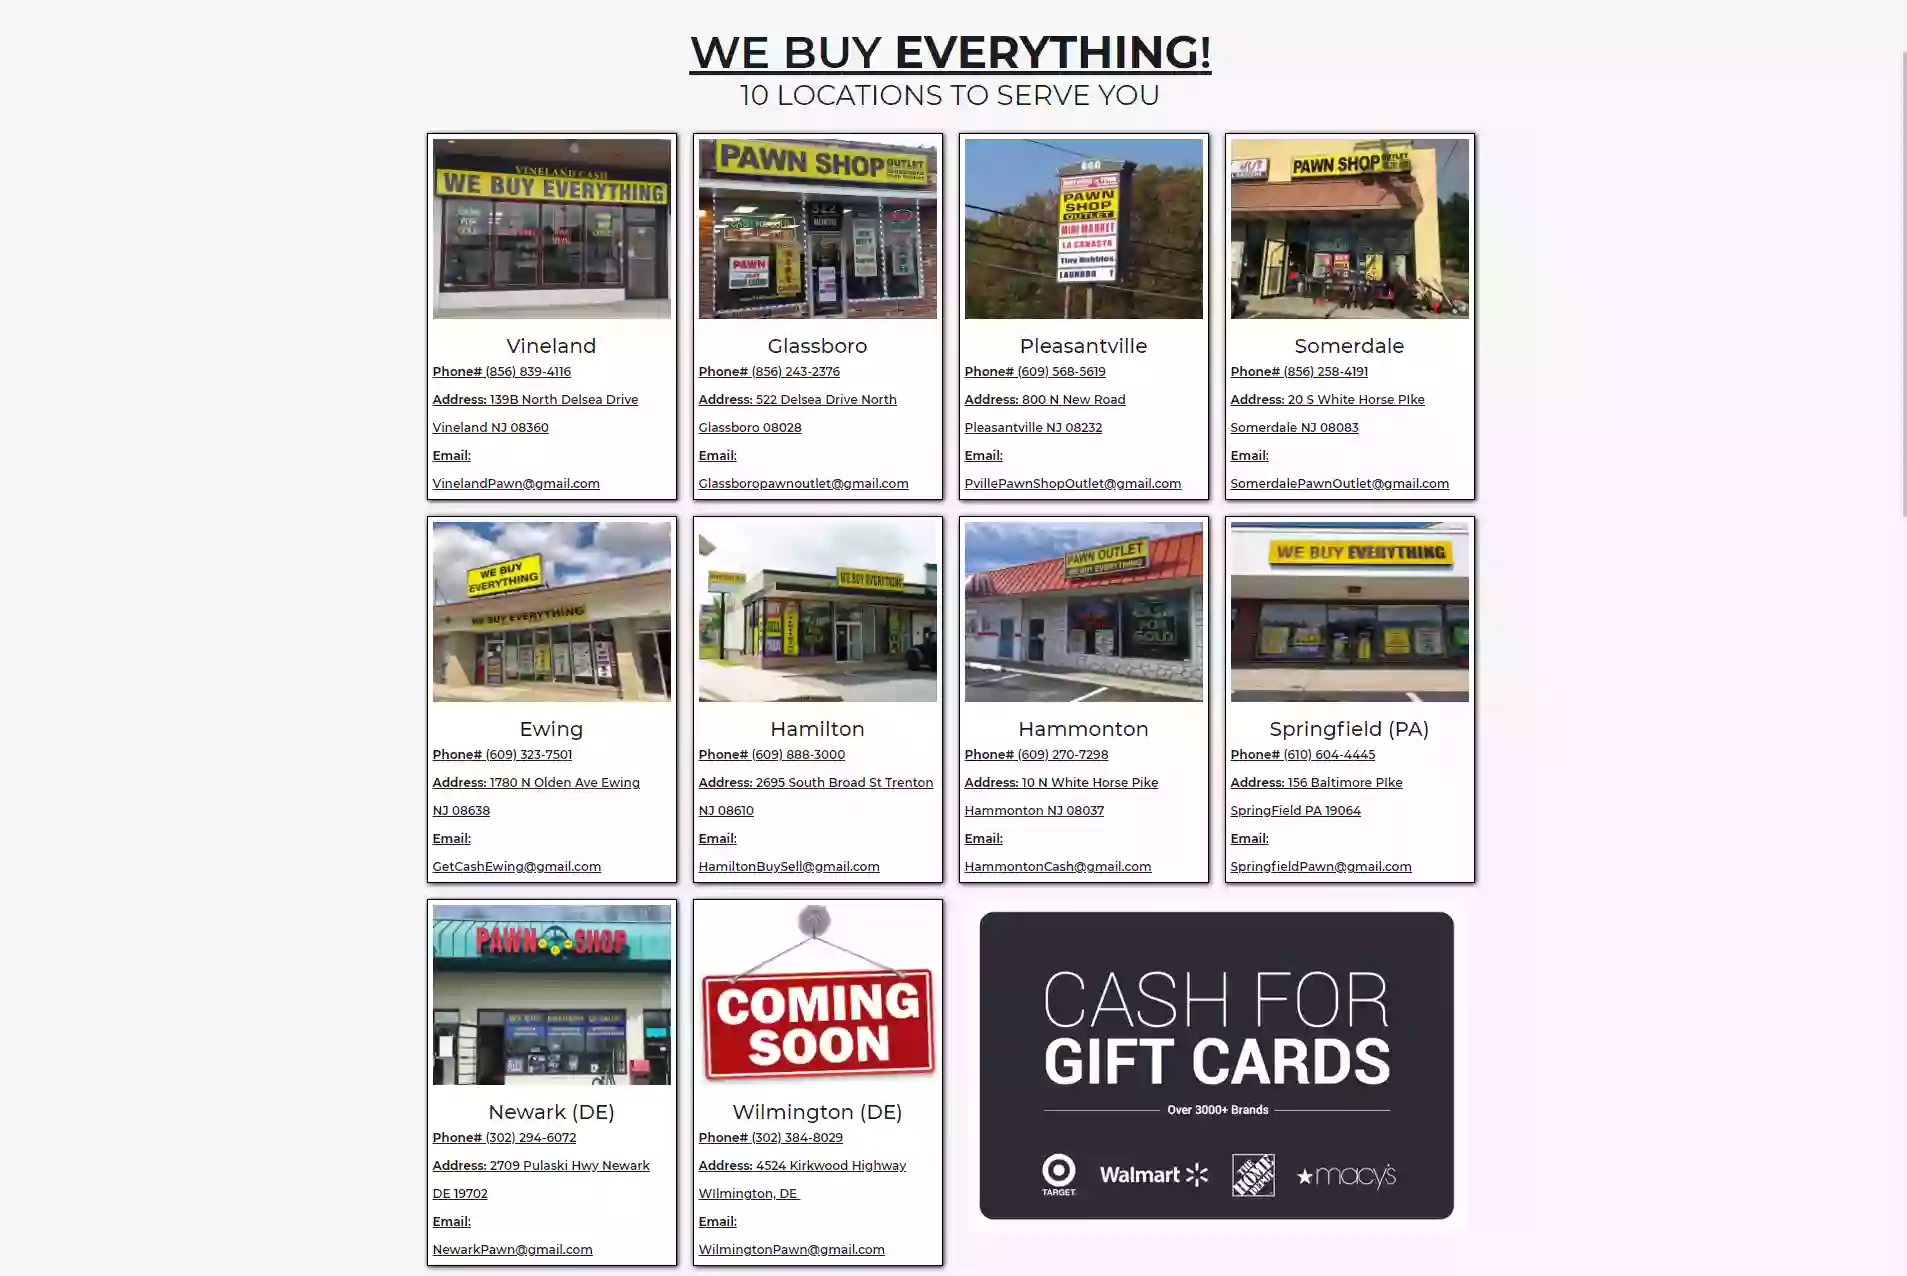 We Buy Everything Pawn Shop - Vineland